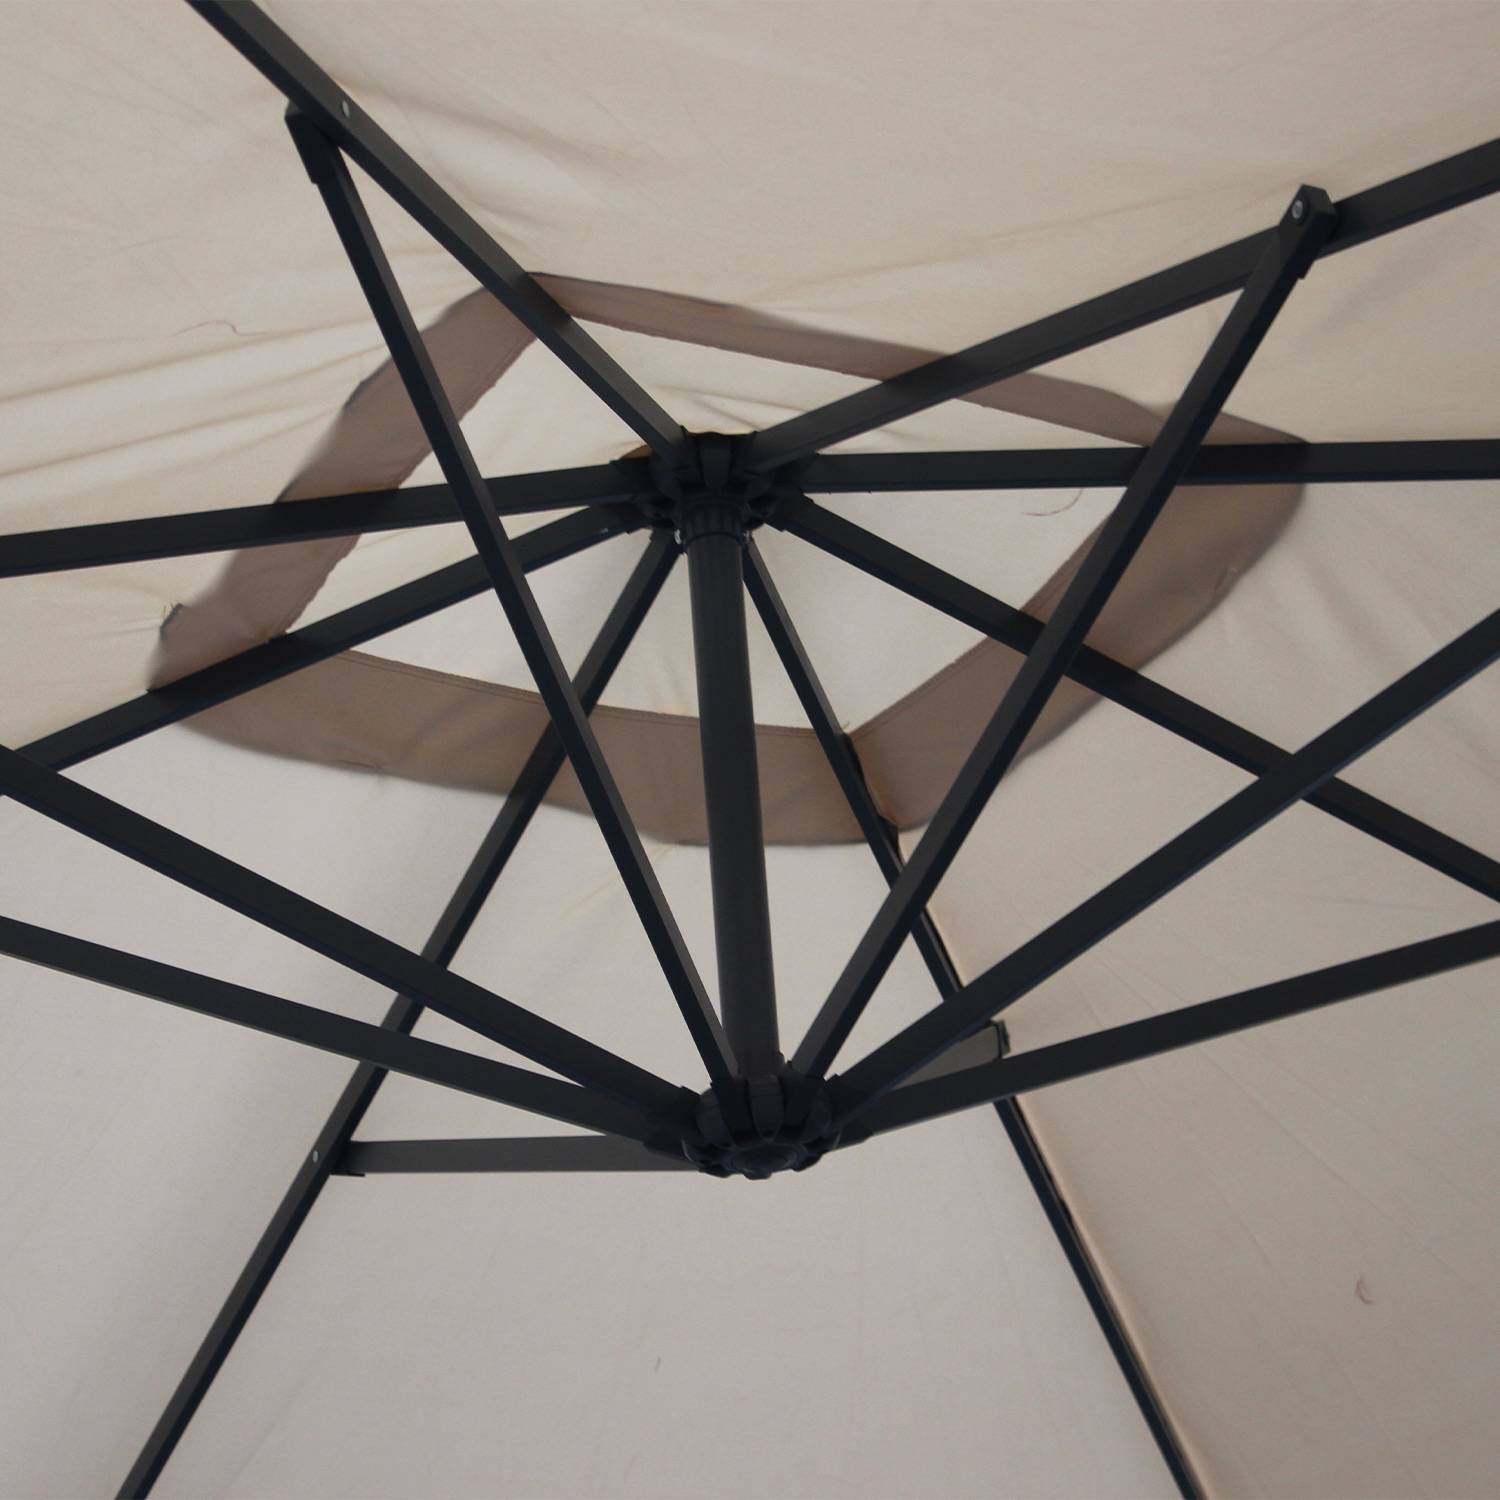 Hardelot, parasol déporté 3x3m Photo5